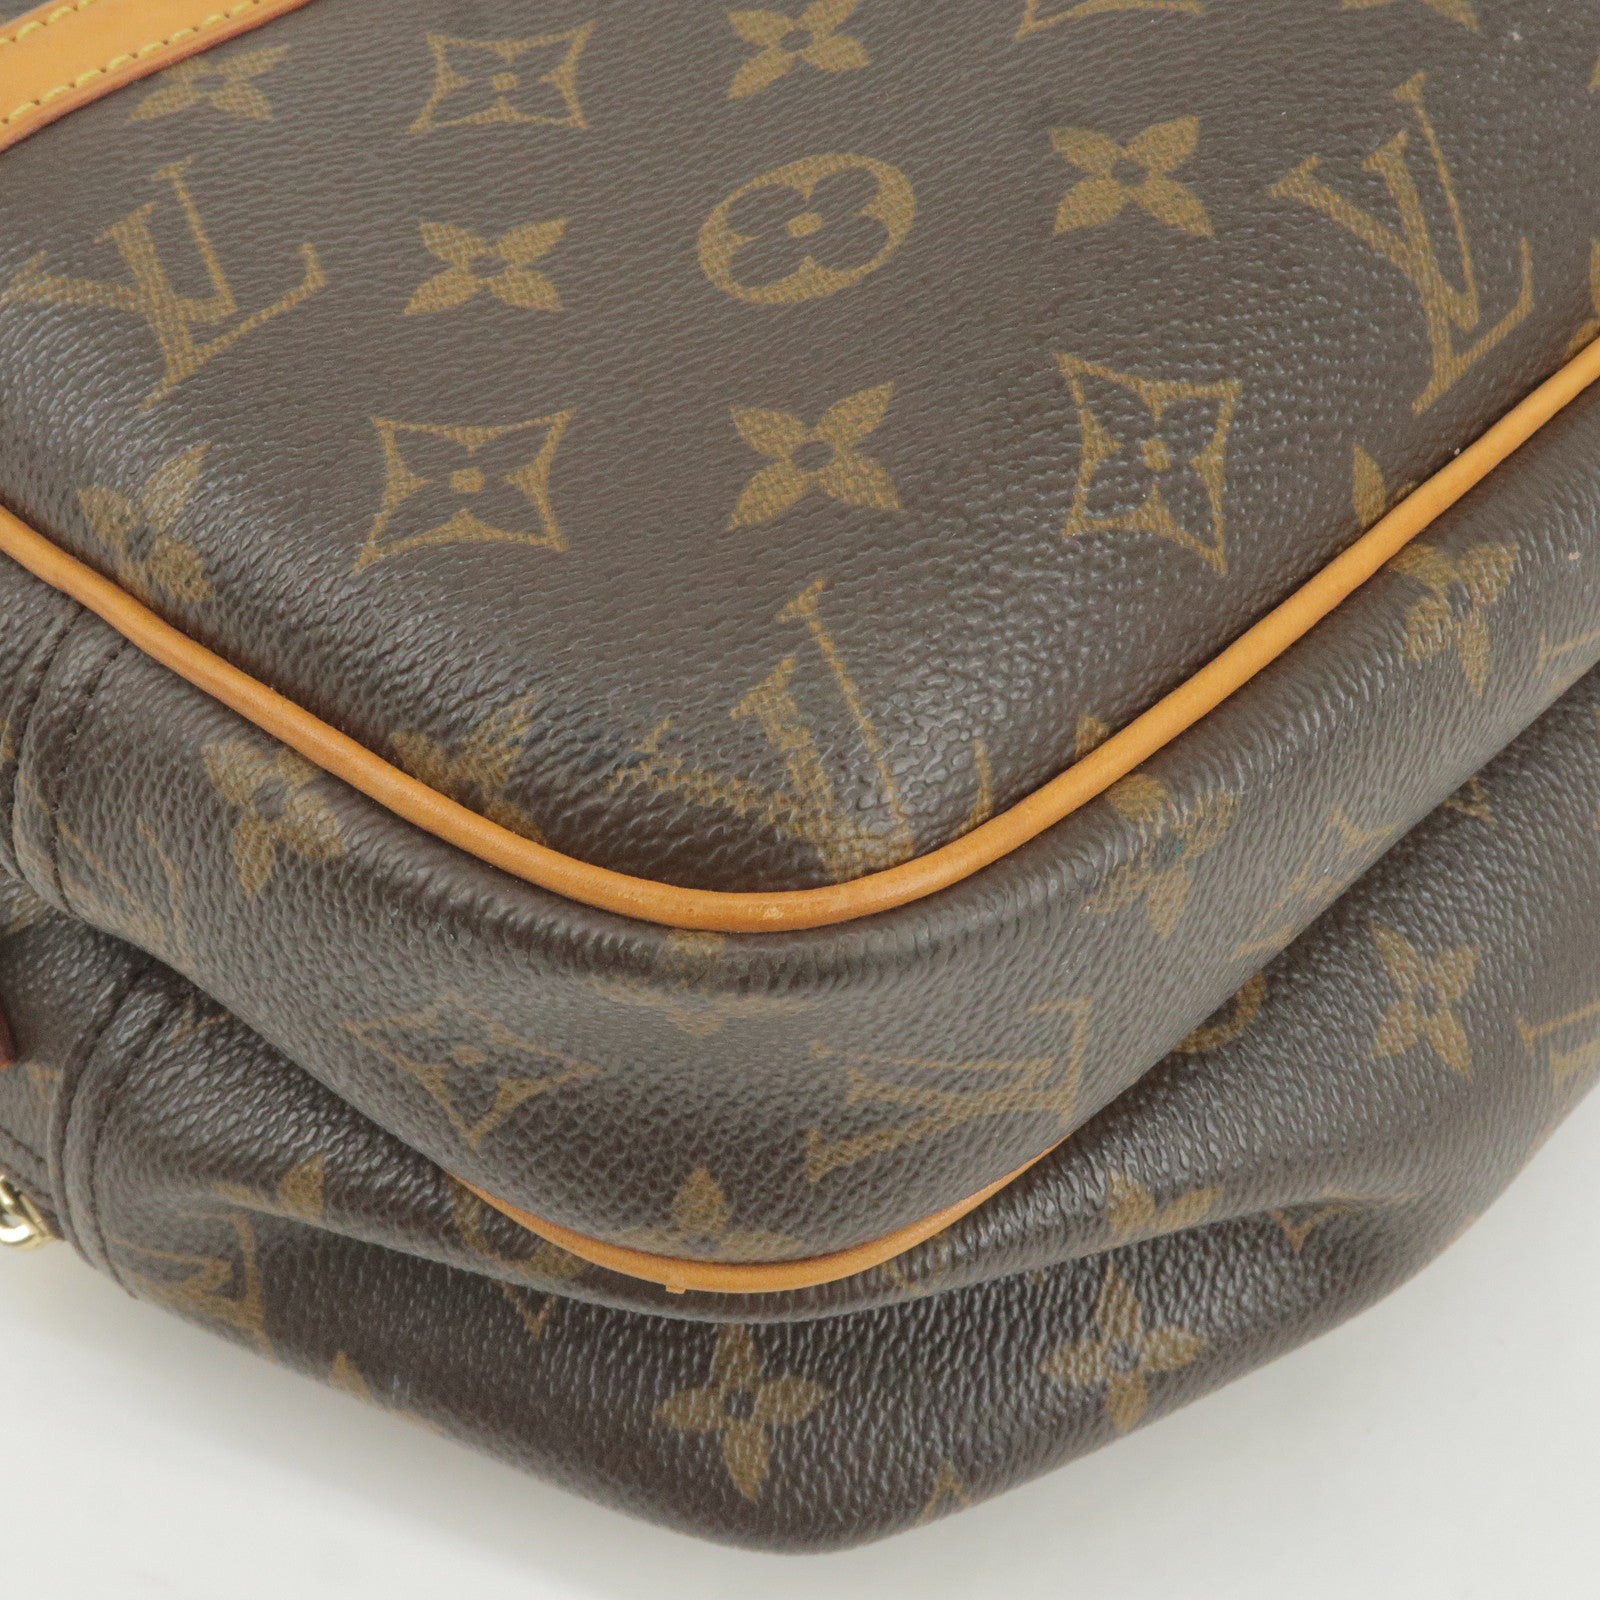 Louis Vuitton Monogram Canvas Reporter PM Messenger Bag M45254 – OPA Vintage